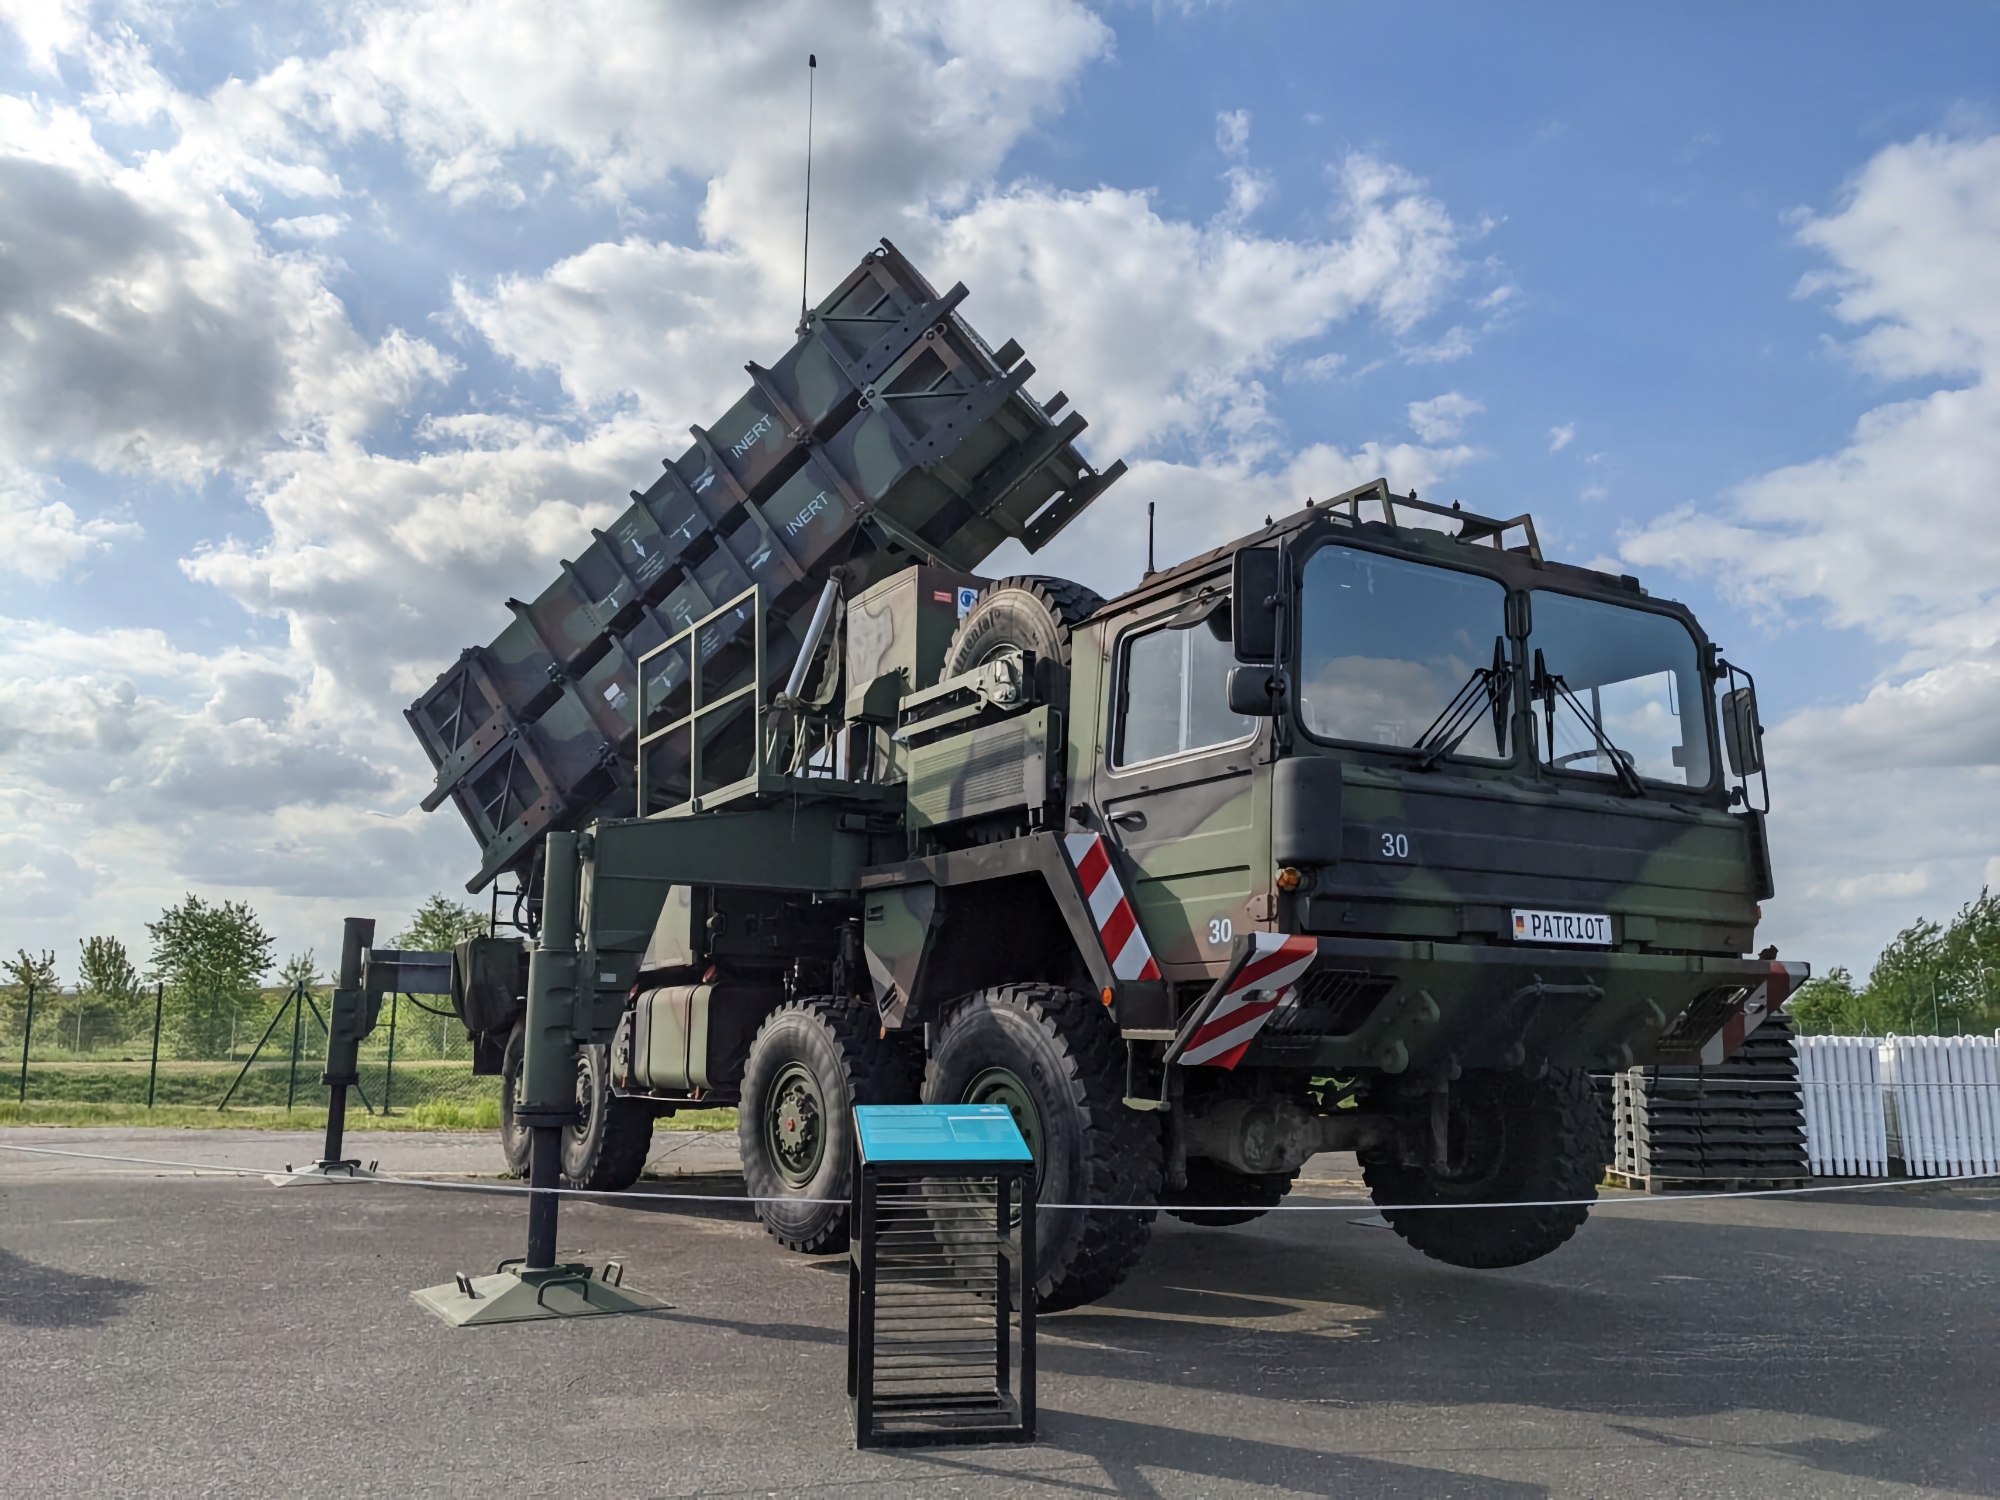 Tyskland överför ytterligare MIM-104 Patriot luftvärnsrobotsystem till Ukraina